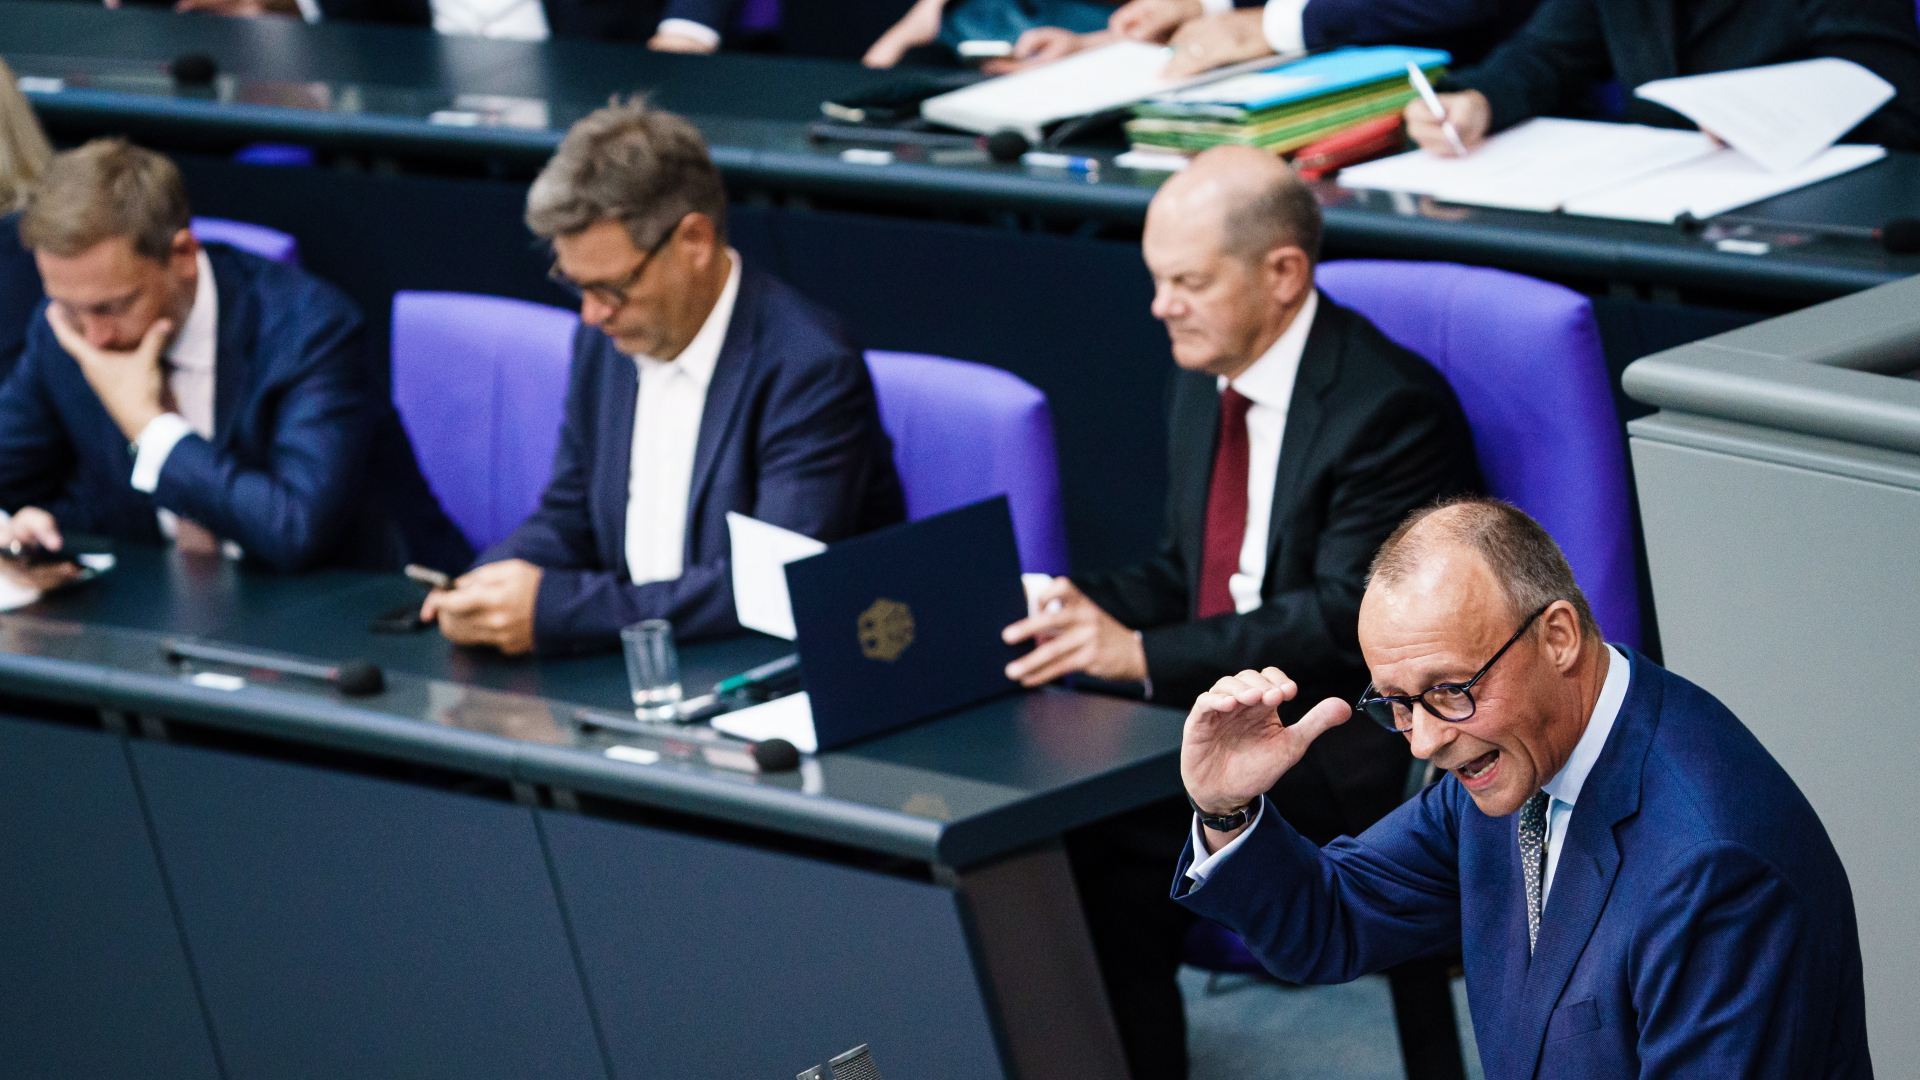 Oppositionschef Merz und Kanzler Scholz im Bundestag | EPA